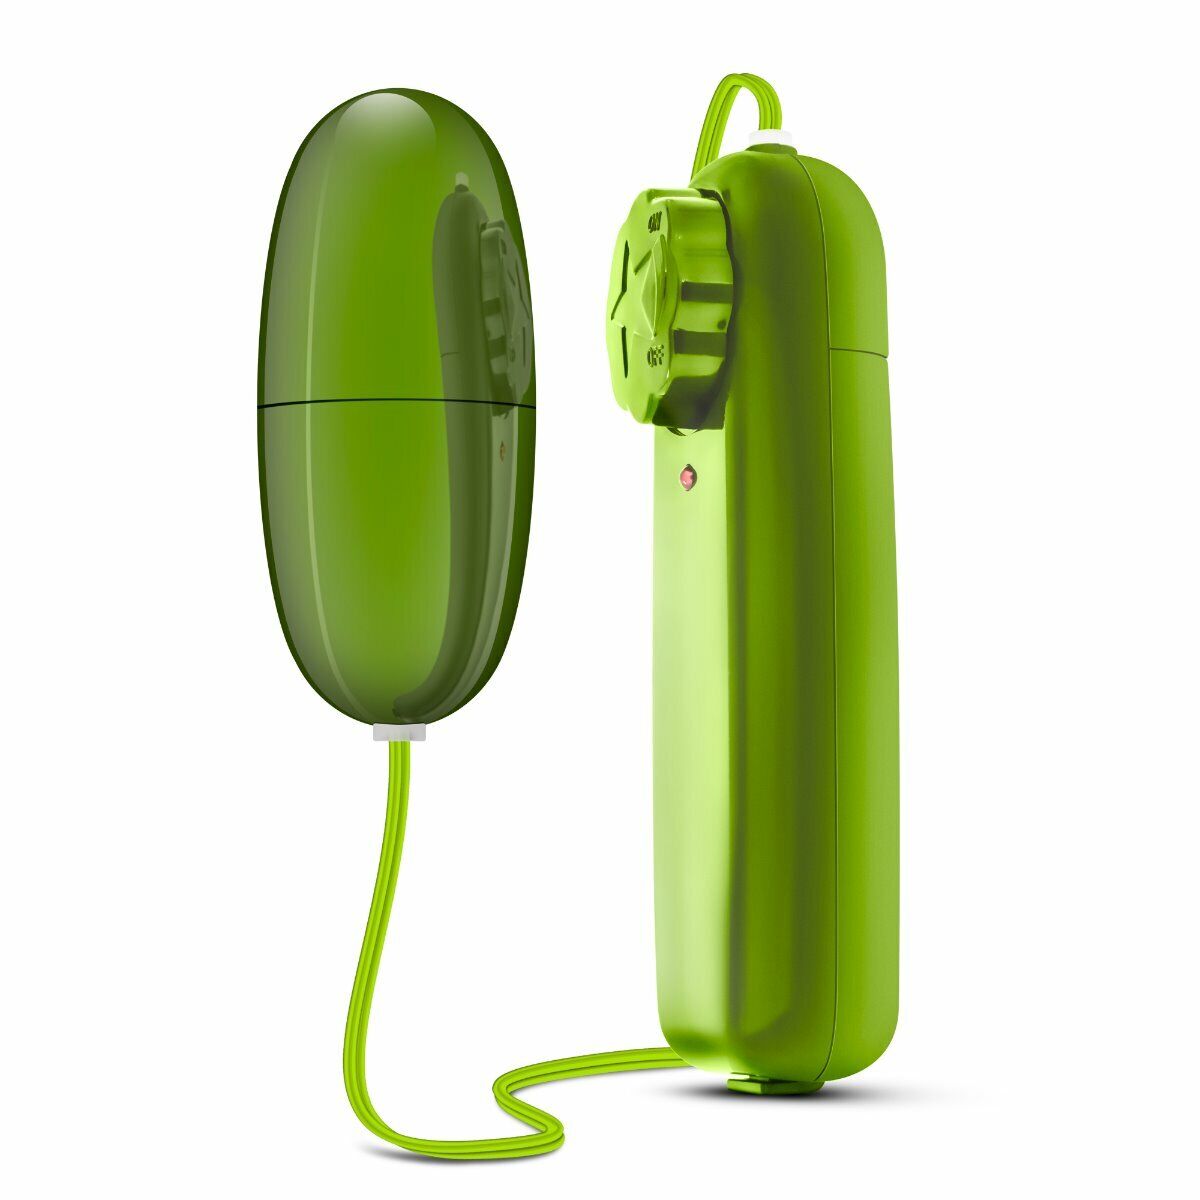 Lime Green Multi-speed Vibrating Bullet Egg Vibrator Beginner Sex Toys for Women